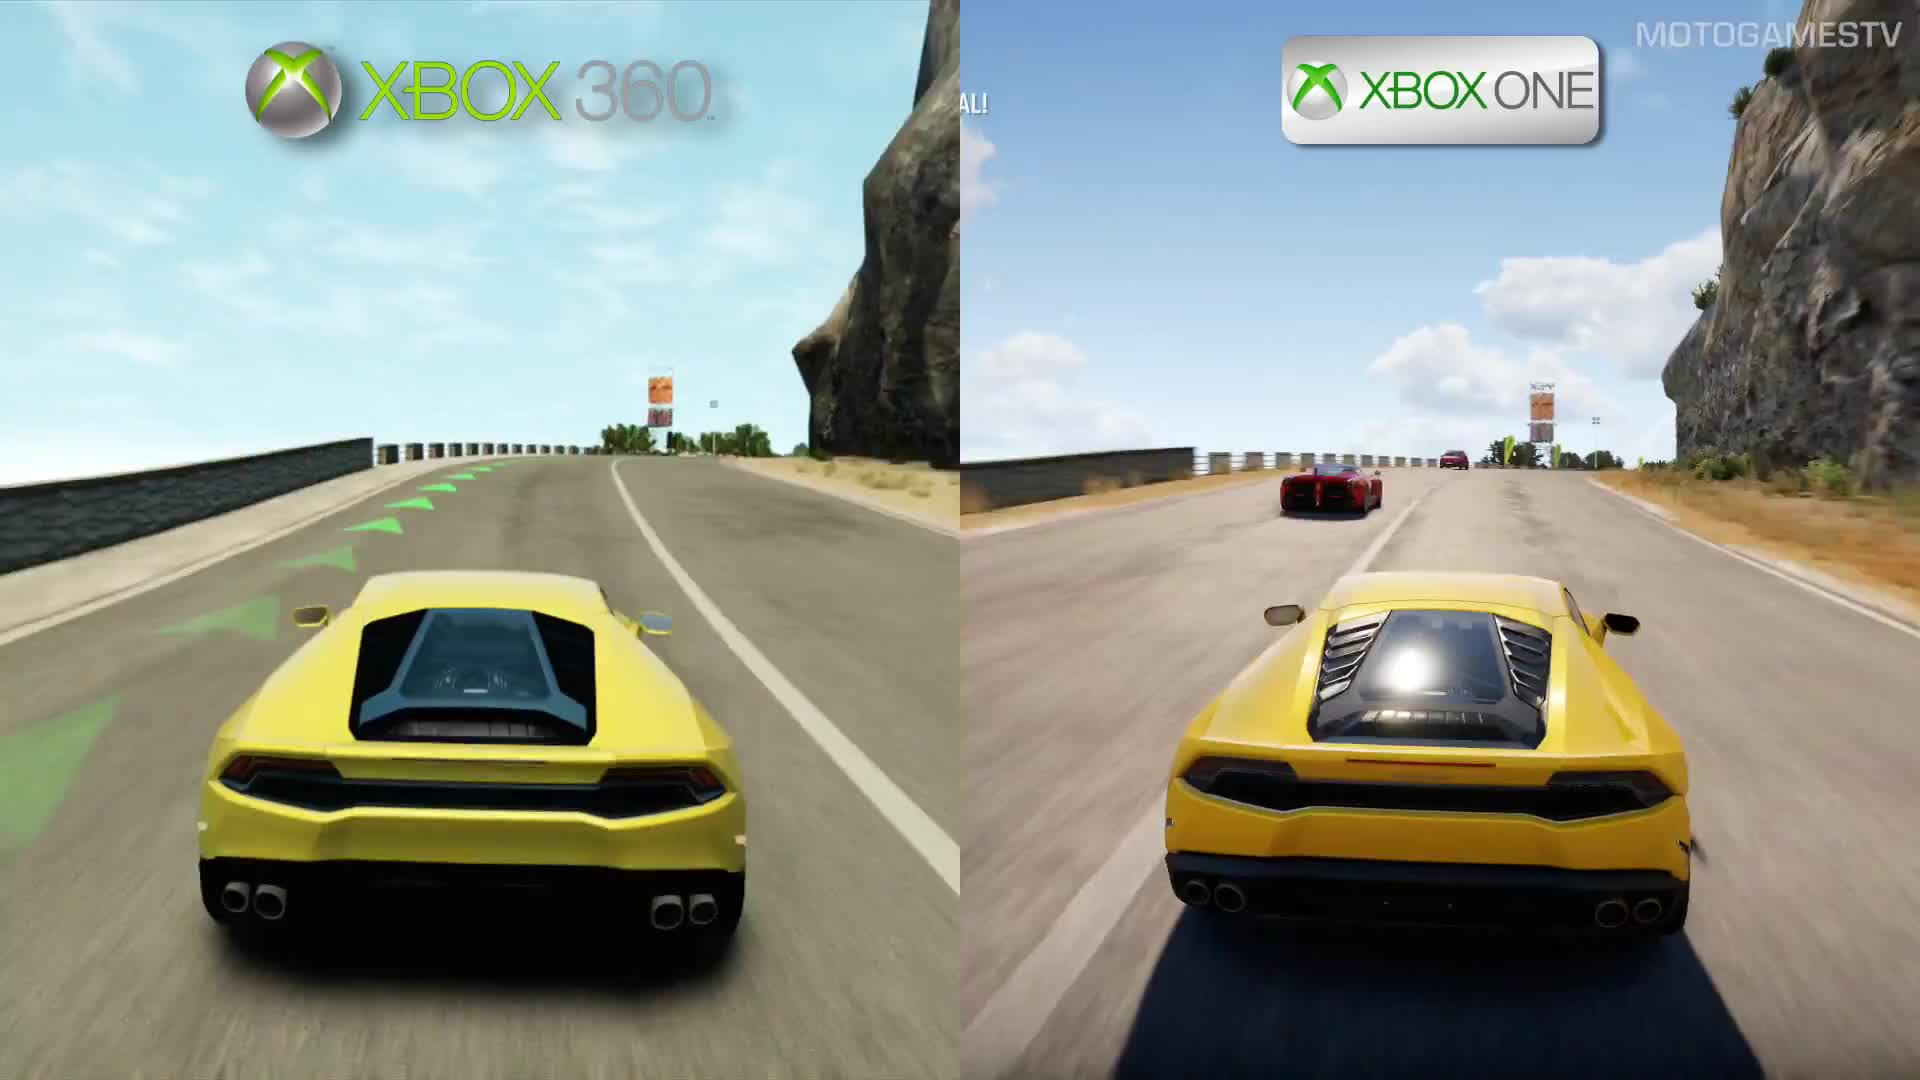 Forza Horizon 2 - Xbox One vs Xbox 360